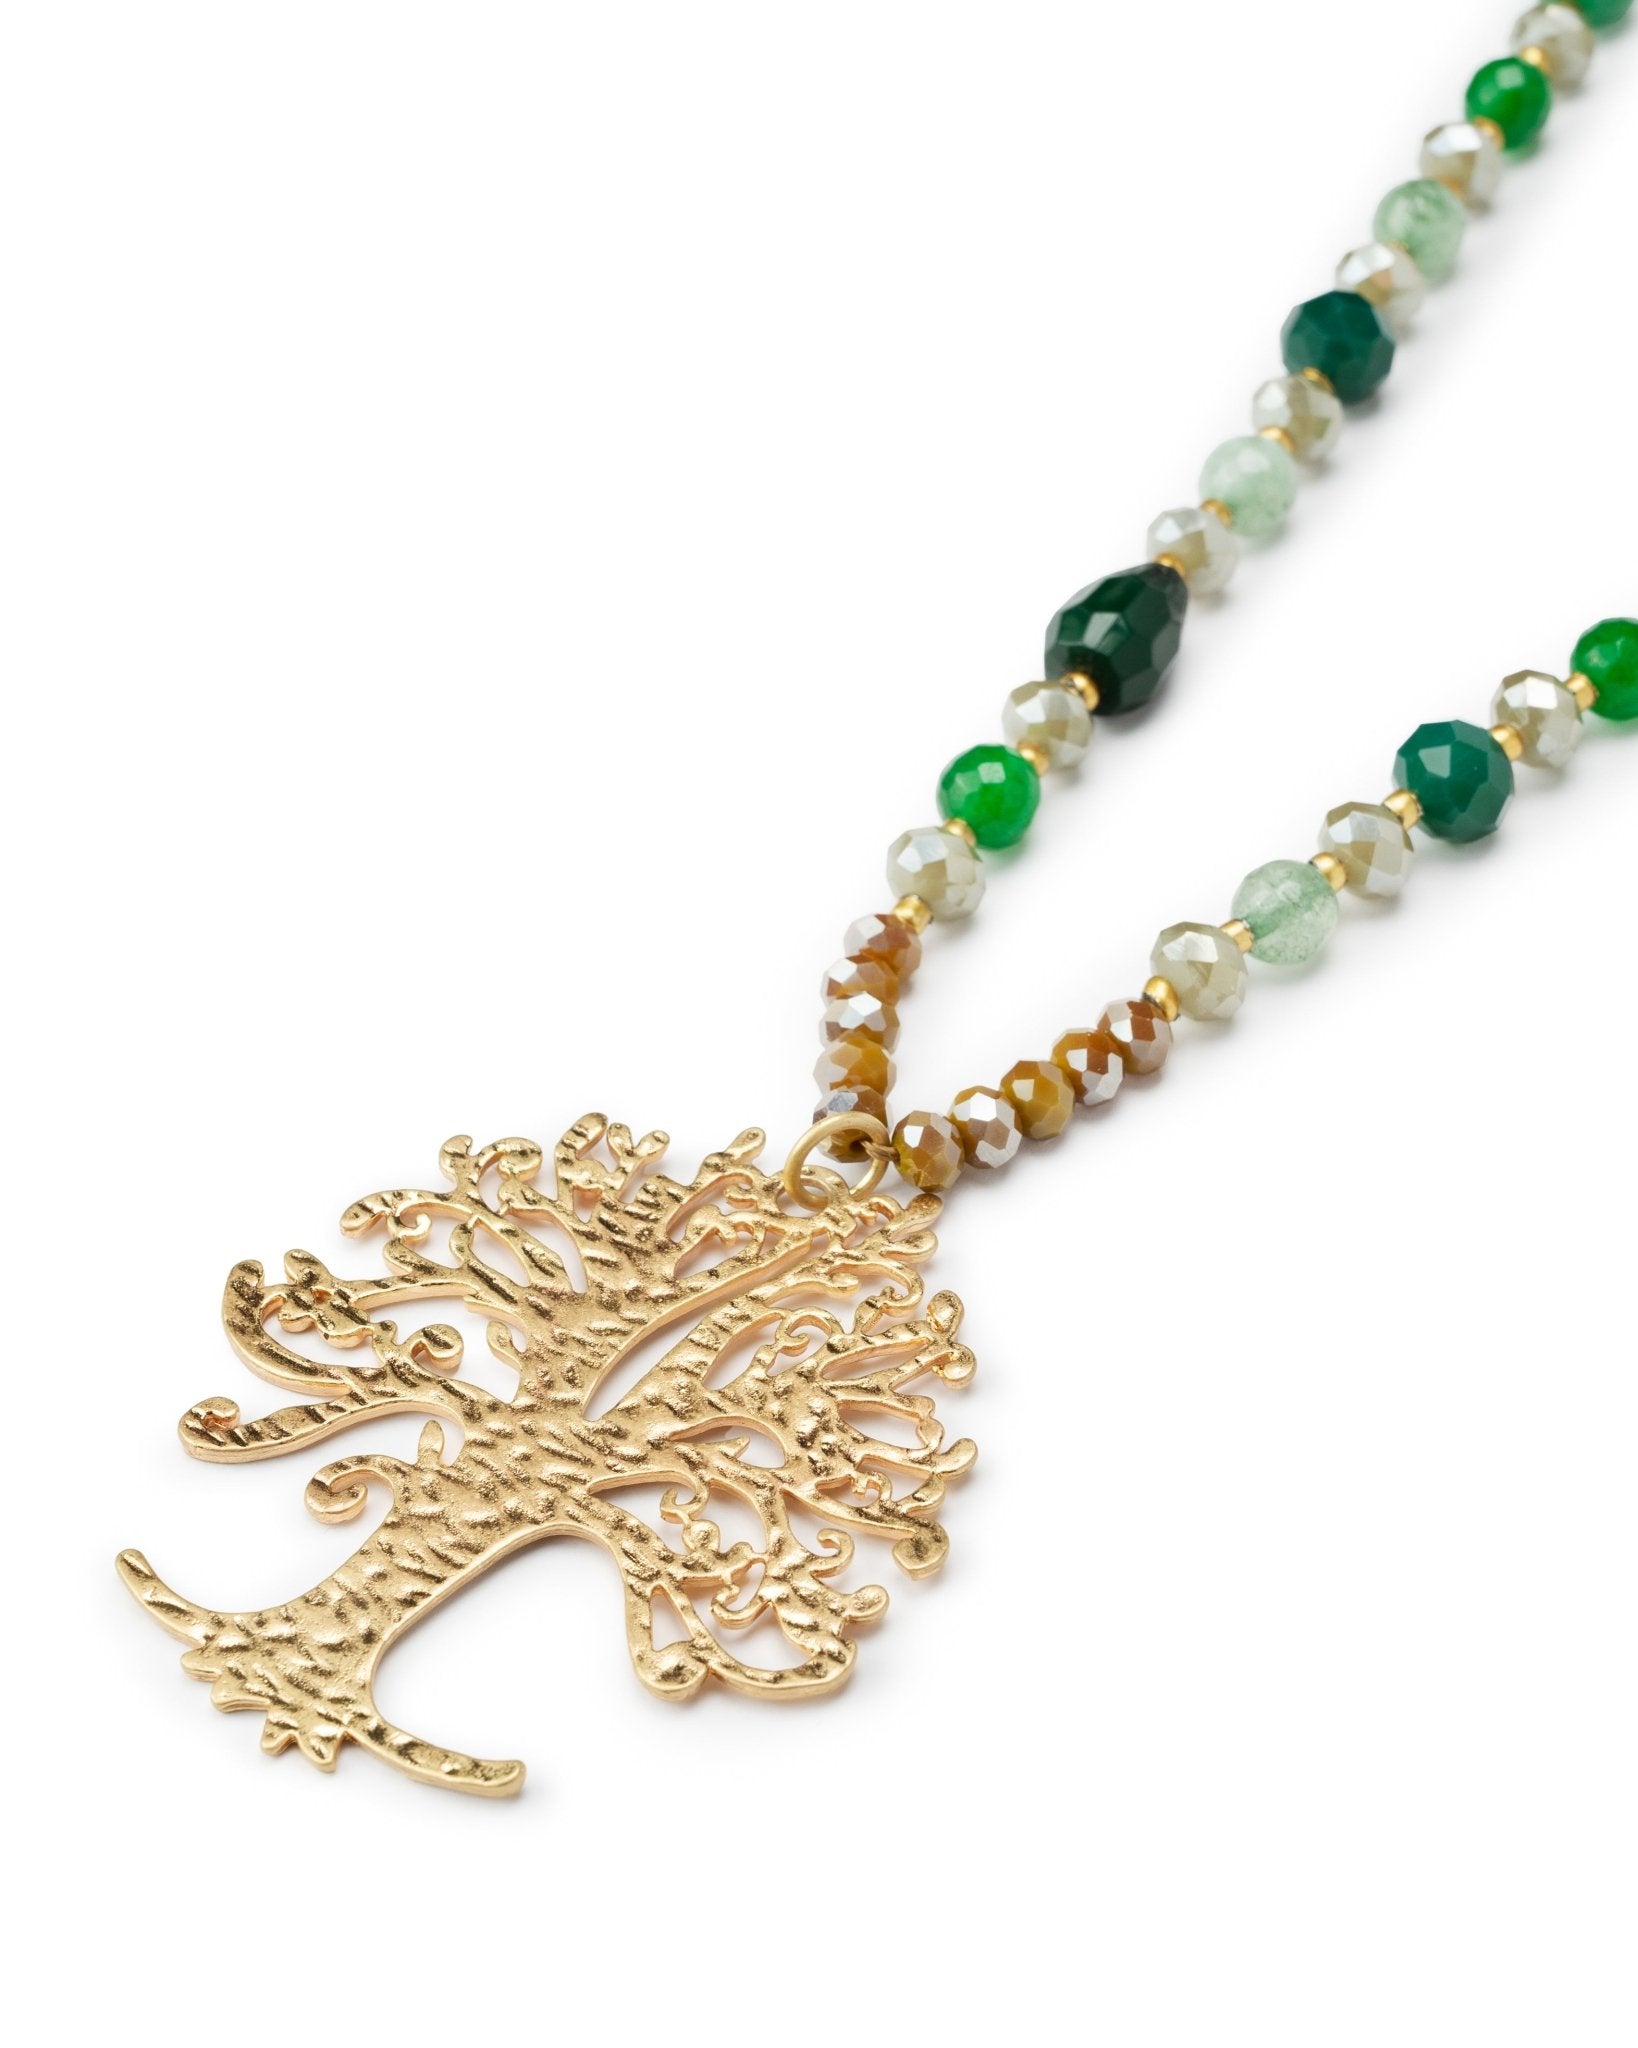 Collana lunga con microcristalli verdi, con pendente ad albero della vita - Mya Accessories